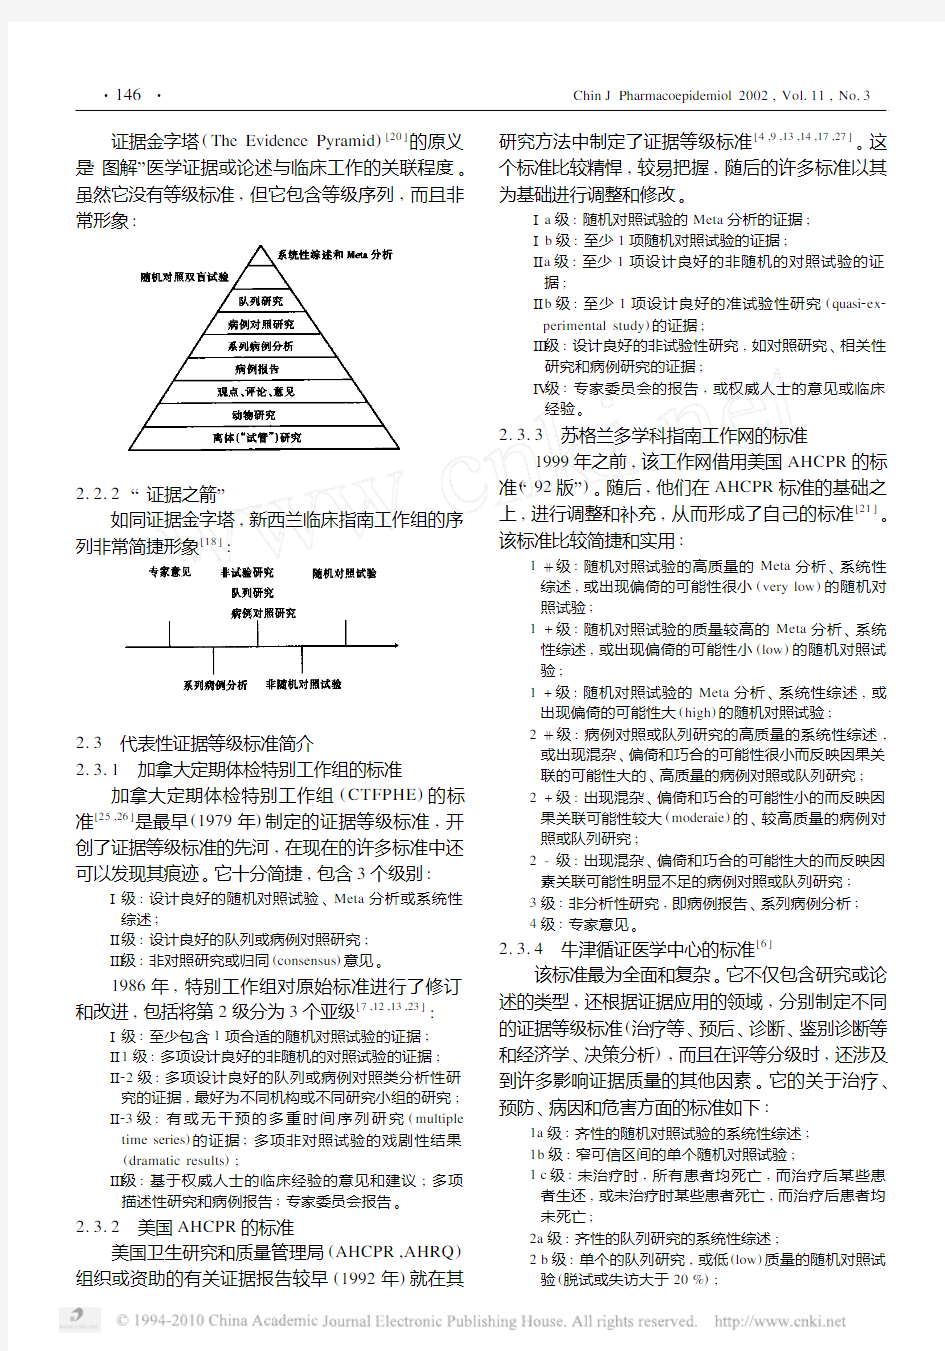 循证医学中文献证据等级标准的系统性综述